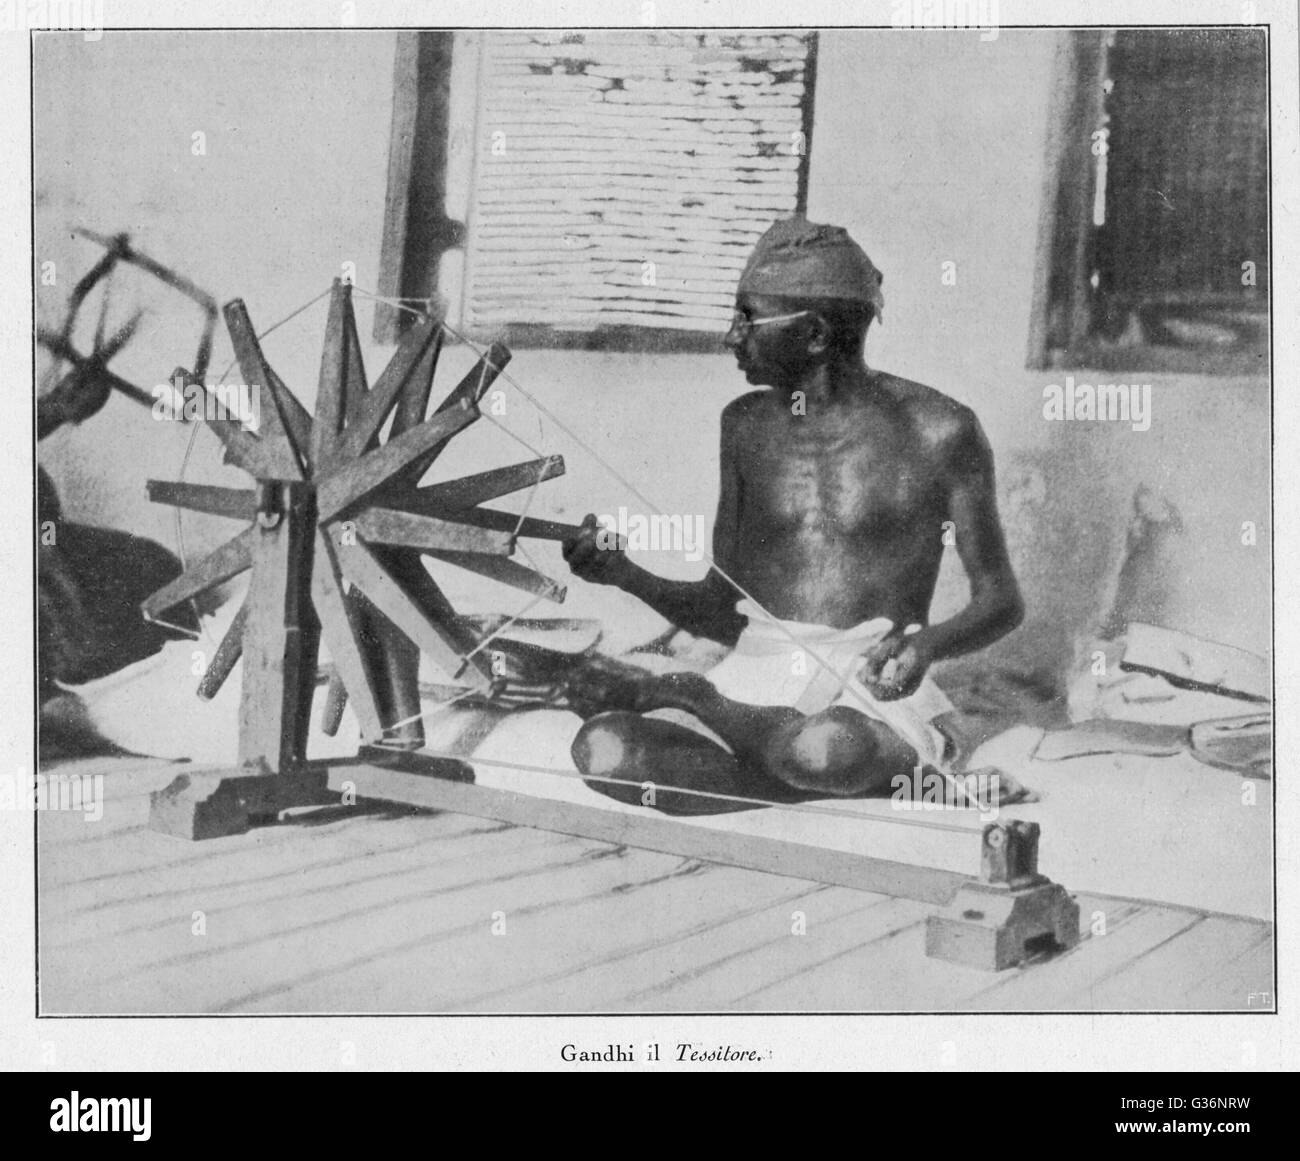 Mahatma Gandhi, indischer nationalist und spirituelle Führer, Spinnen an seinem Hinterrad (Charakha) im Jahr 1931 zeigt seine starke Arbeitsmoral.      Datum: 1869-1948 Stockfoto